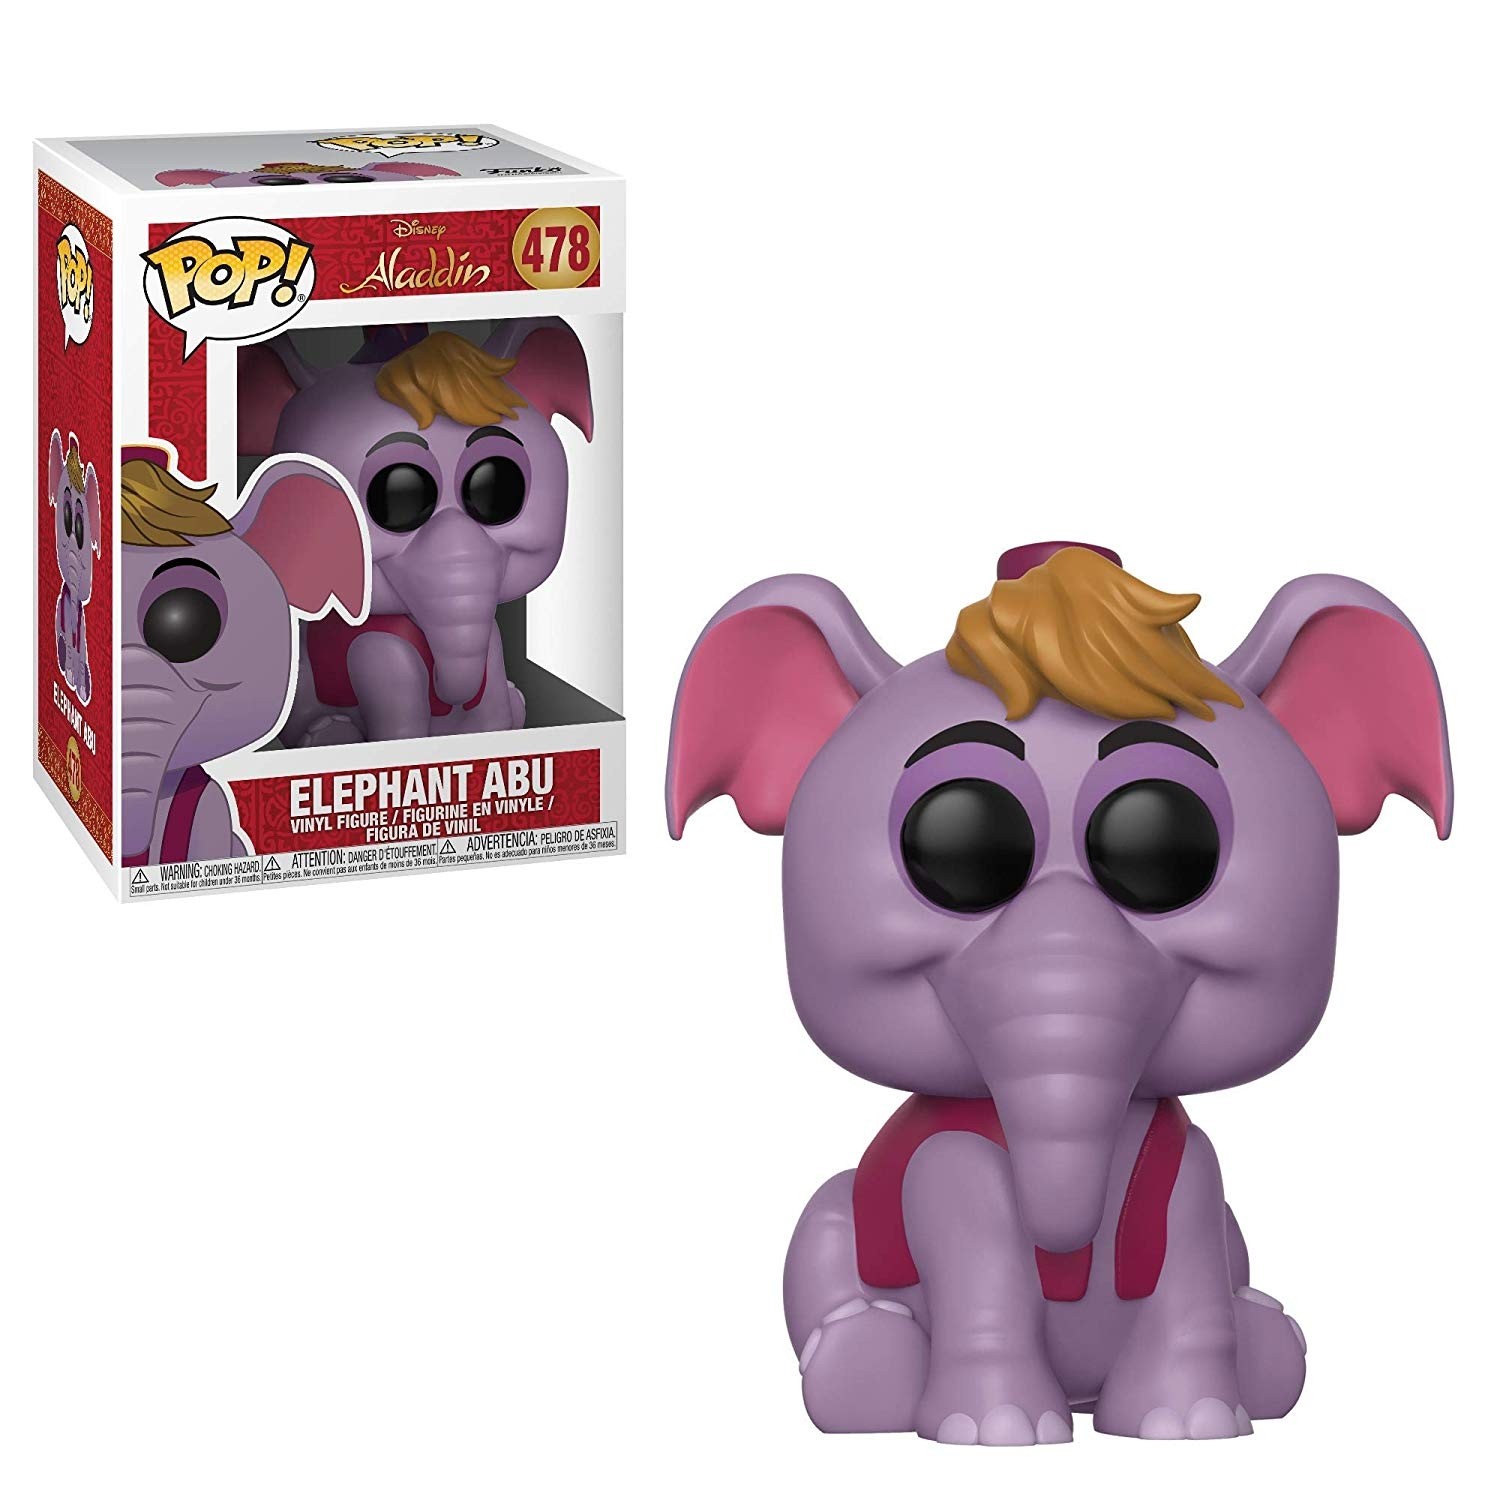 POP! Vinyl: Disney: Aladdin - Elephant Abu